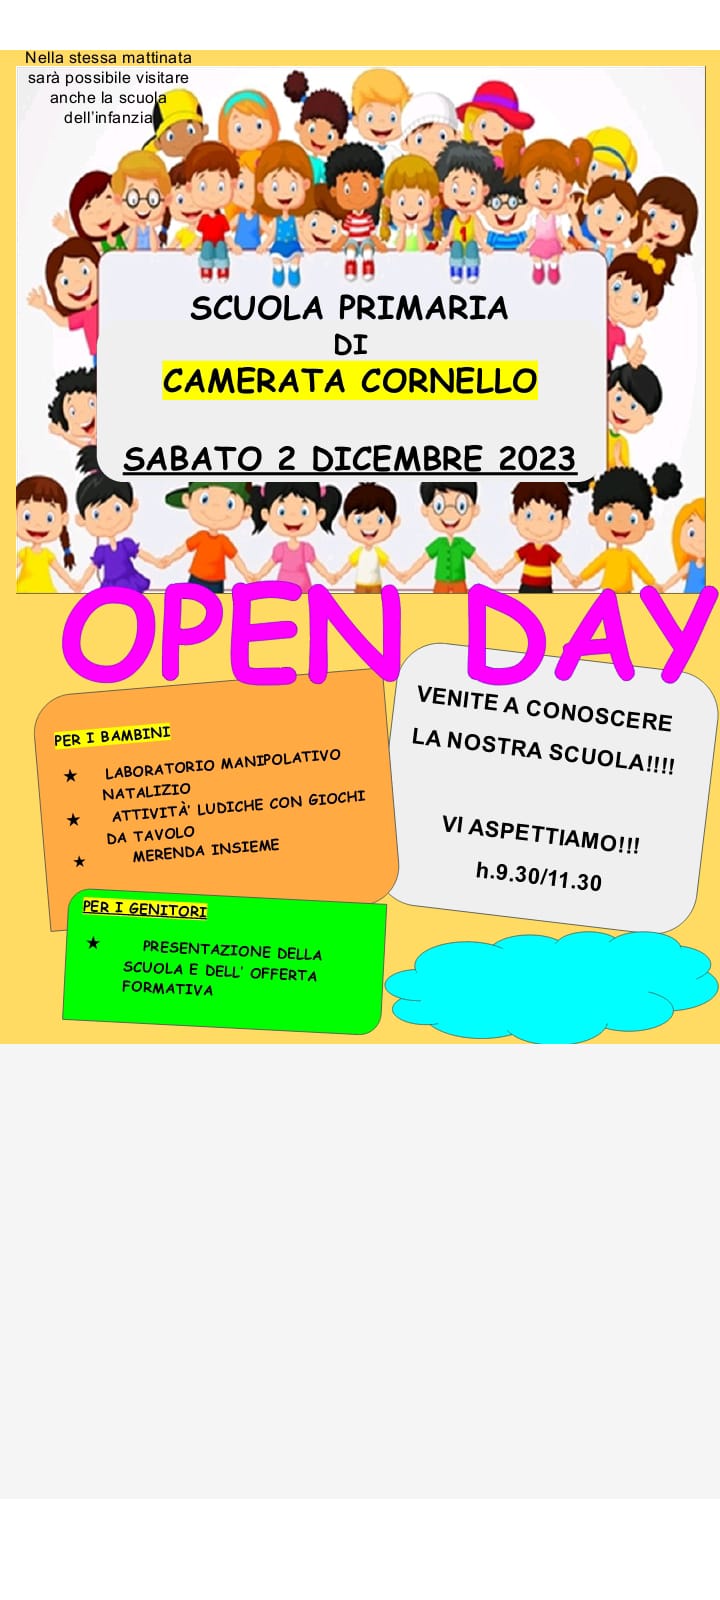 Open day scuola primaria sabato 02.12.2023 dalle 9.30 alle 11.30